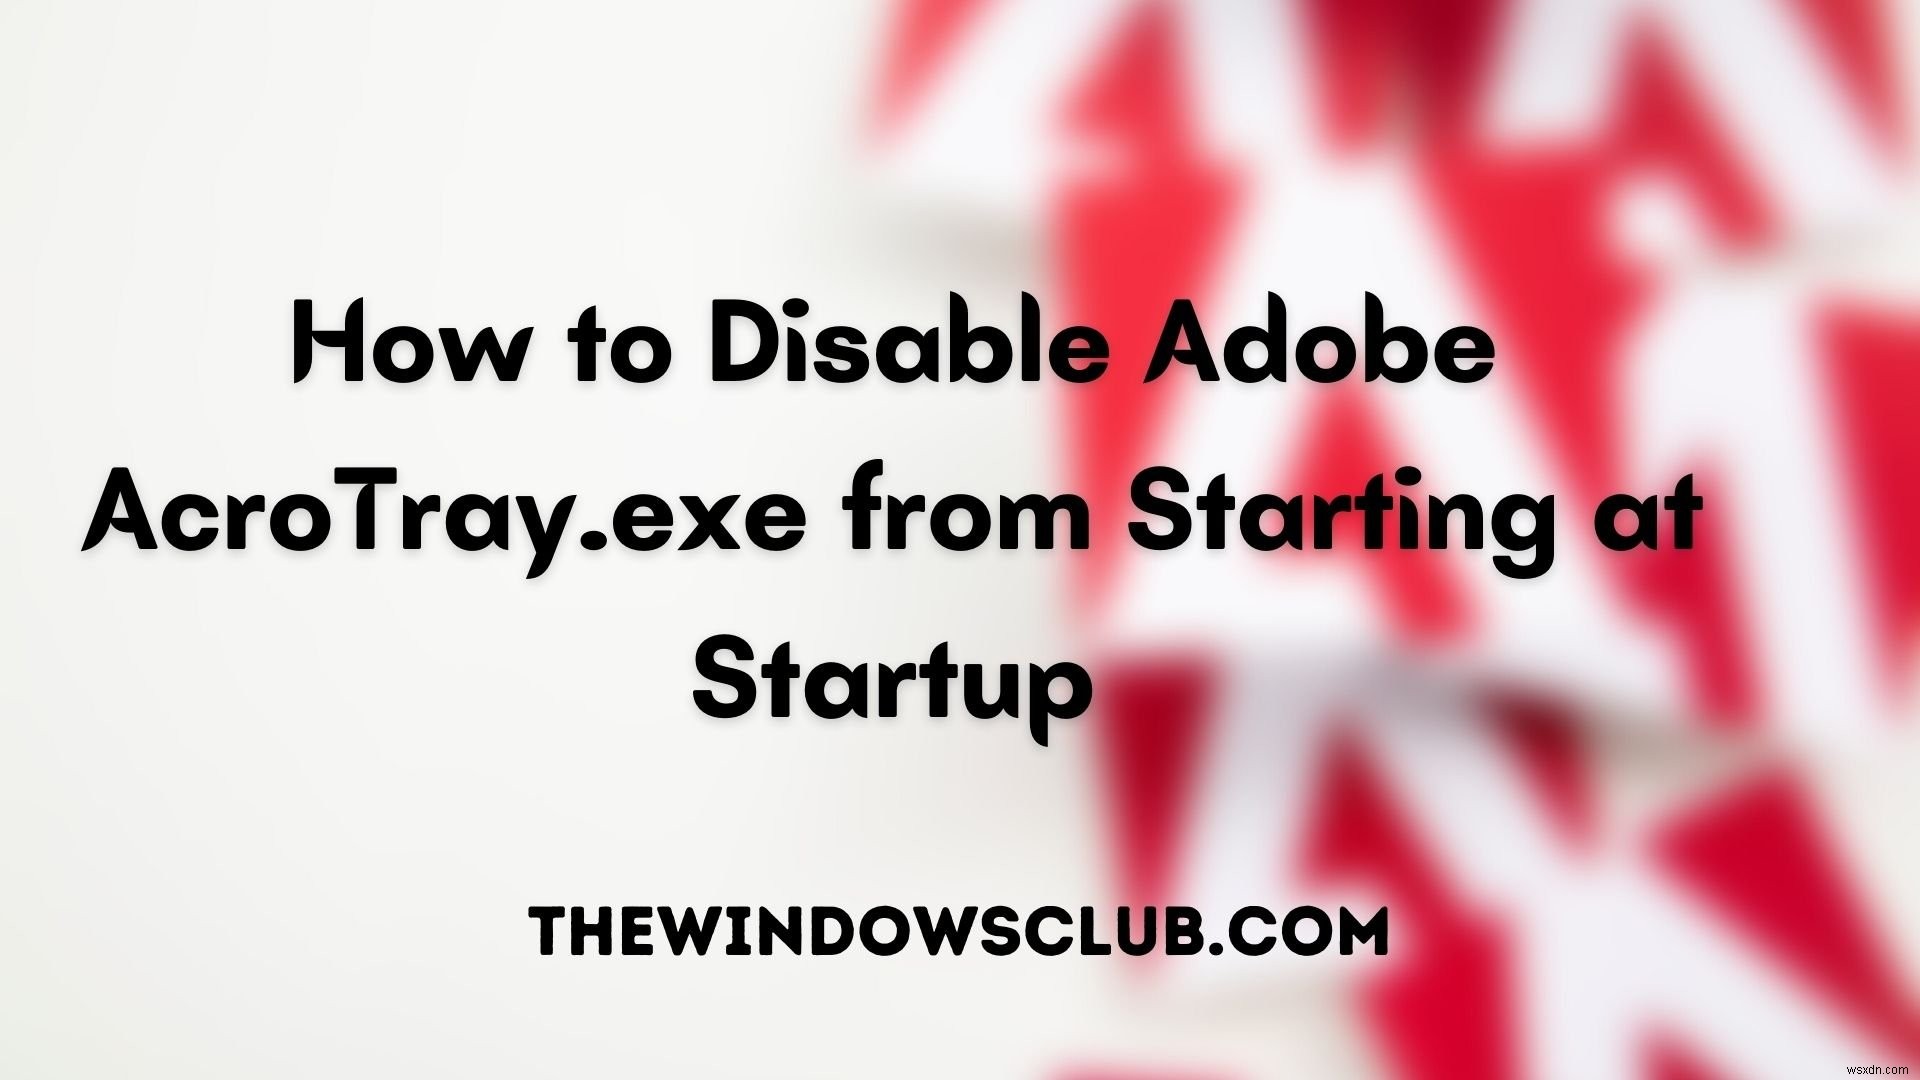 วิธีปิดการใช้งาน Adobe AcroTray.exe จากการเริ่มต้นเมื่อเริ่มต้น 